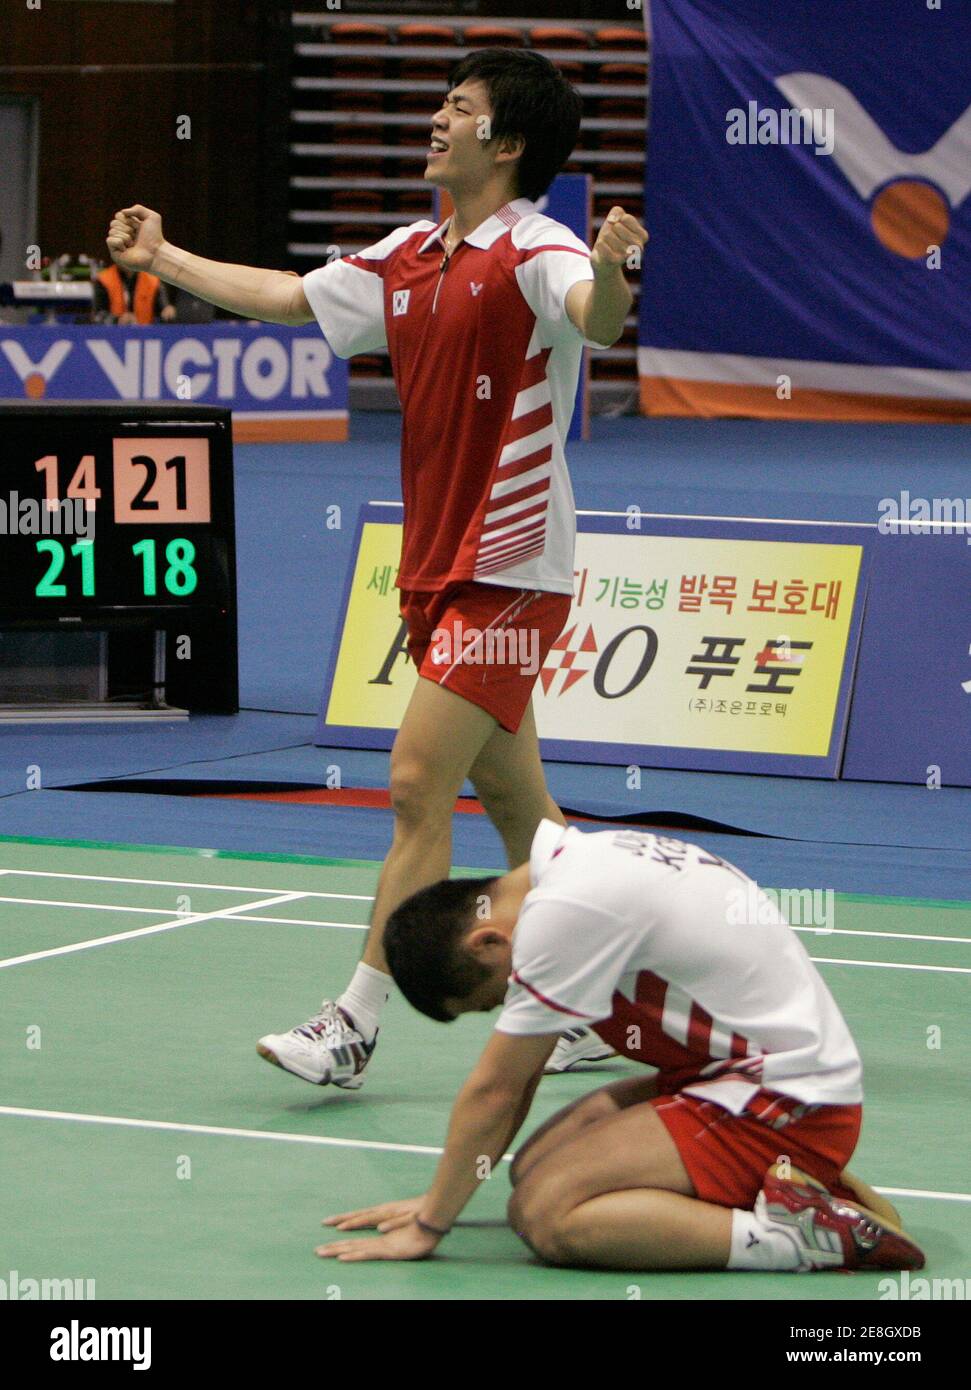 Lee Yong-dae de Corée du Sud (arrière) et Jung Jae-sung célèbrent après avoir remporté le double match final des hommes contre le chinois Cai Yun et Fu Haifeng à la série de badminton ouverte Victor Korea à Séoul le 17 janvier 2010. Lee et Jung ont remporté la médaille d'or. REUTERS/JO Yong-Hak (CORÉE DU SUD - Tags: SPORT BADMINTON) Banque D'Images